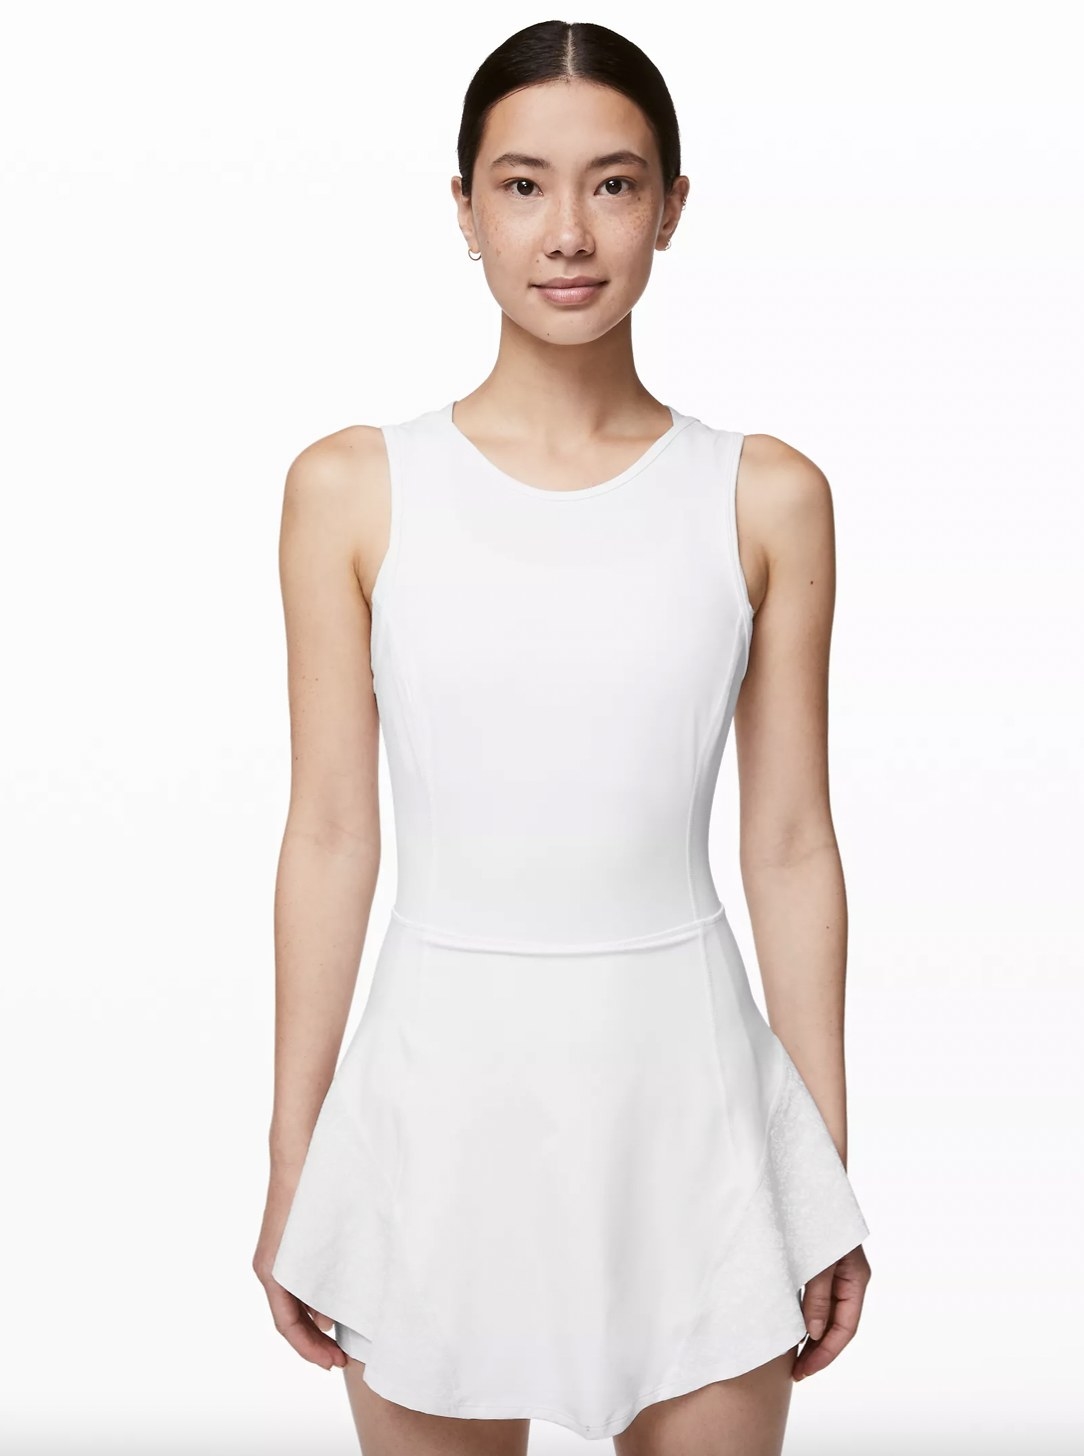 A woman wearing a white dress with a ruffle hem